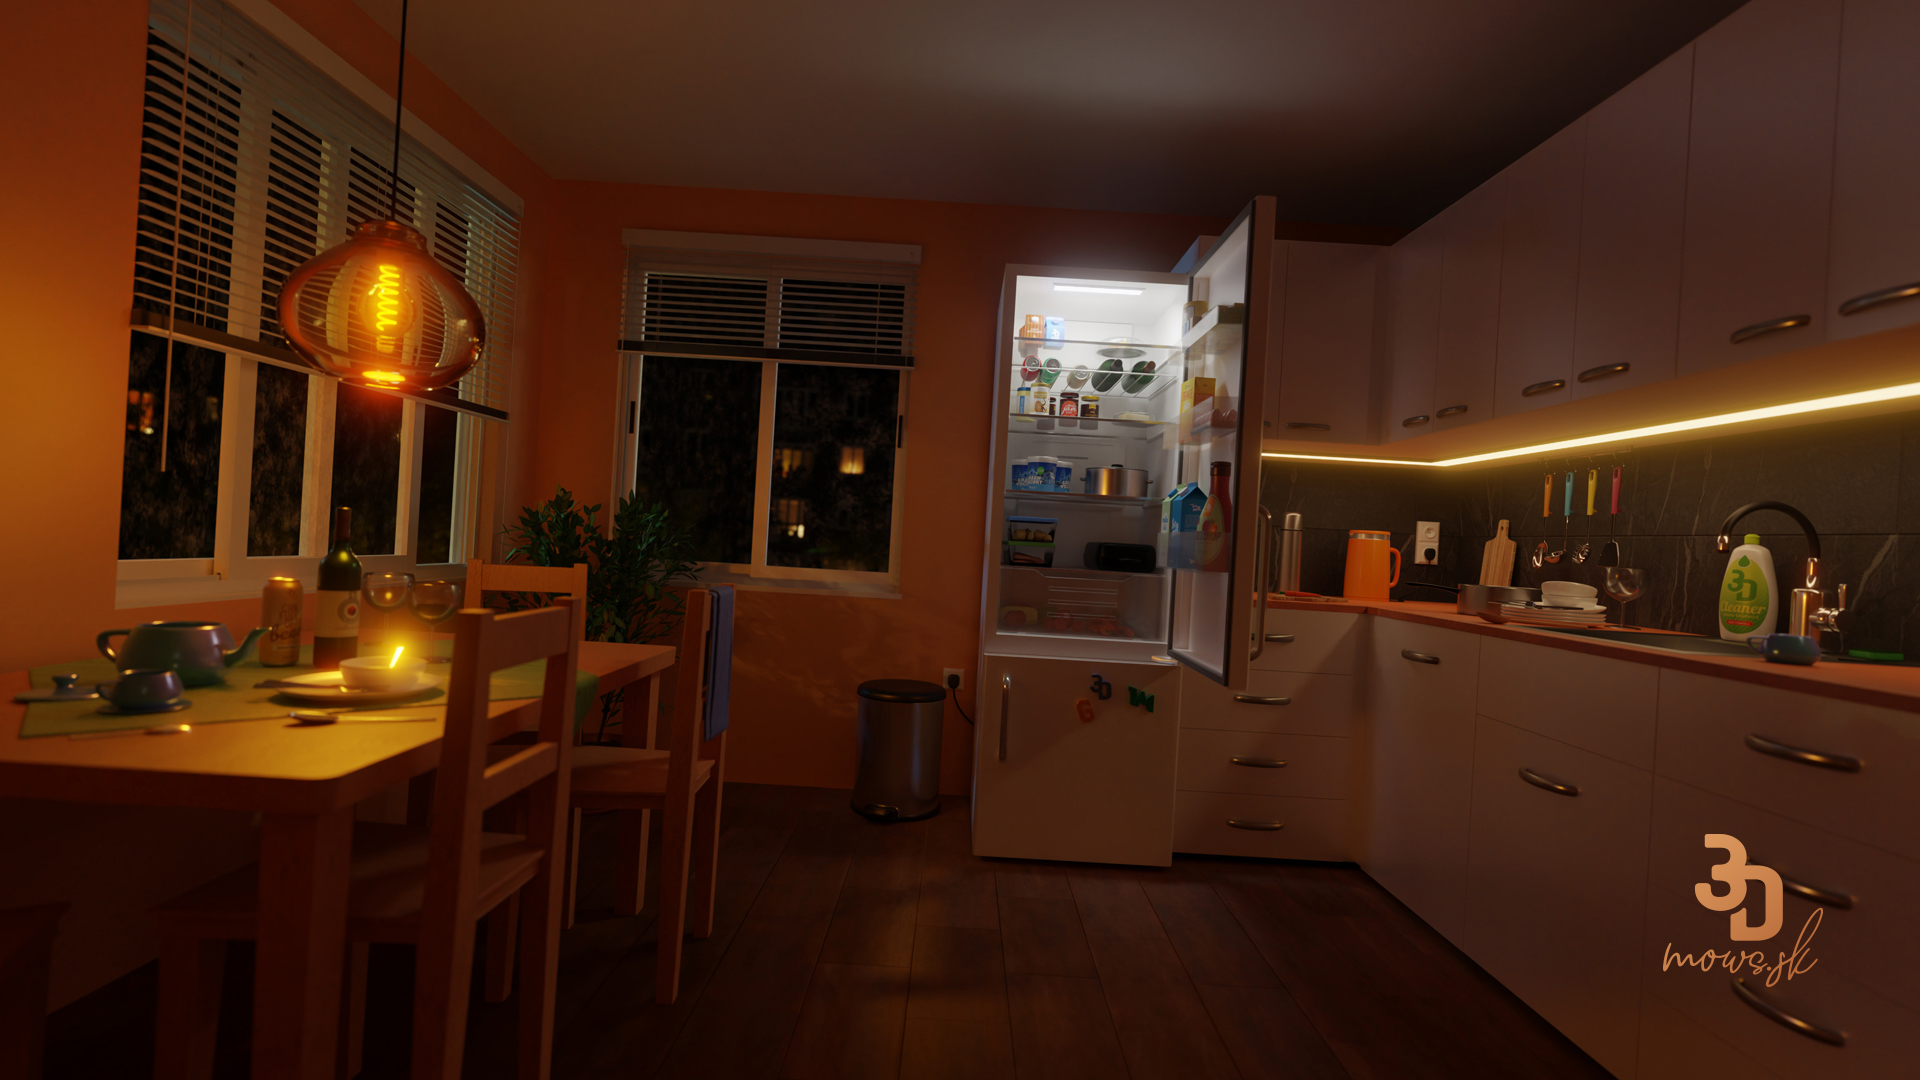 Chladnička v kuchyni renderovaná cez CYCLES